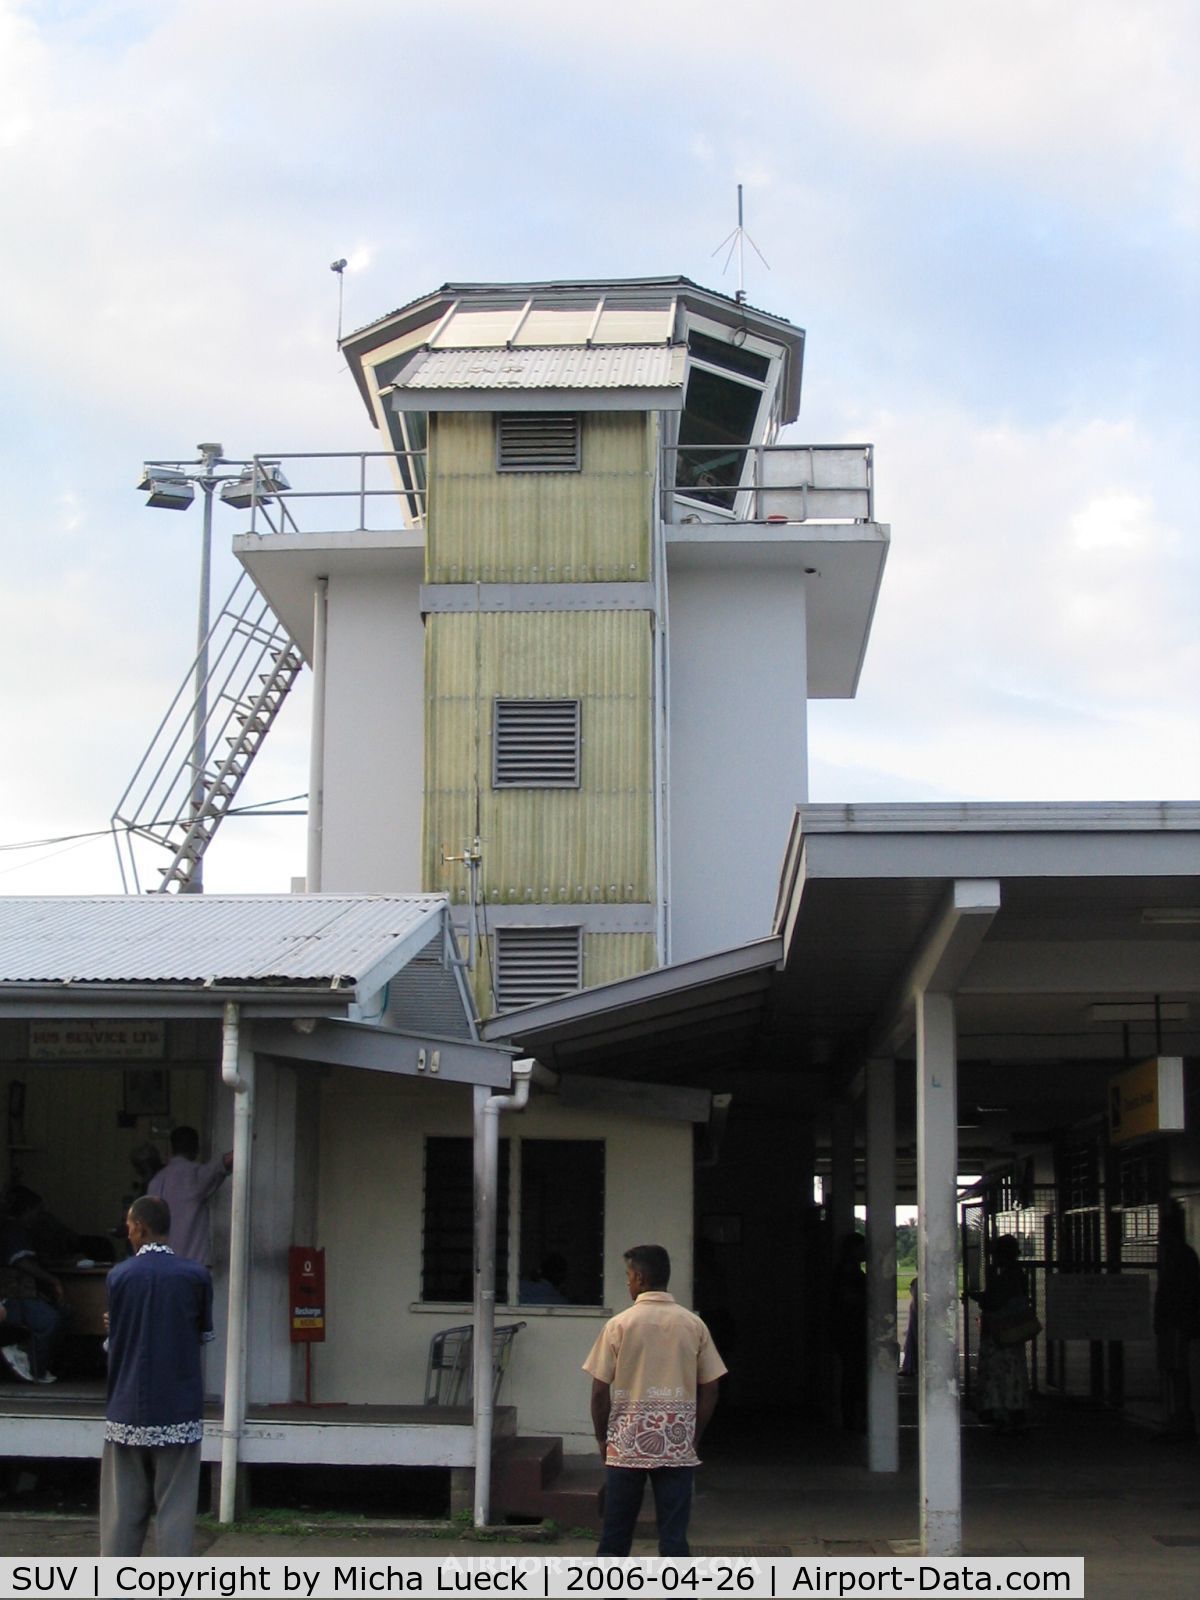 Nausori International Airport, Suva, Viti Levu Fiji (SUV) - Tower at Suva